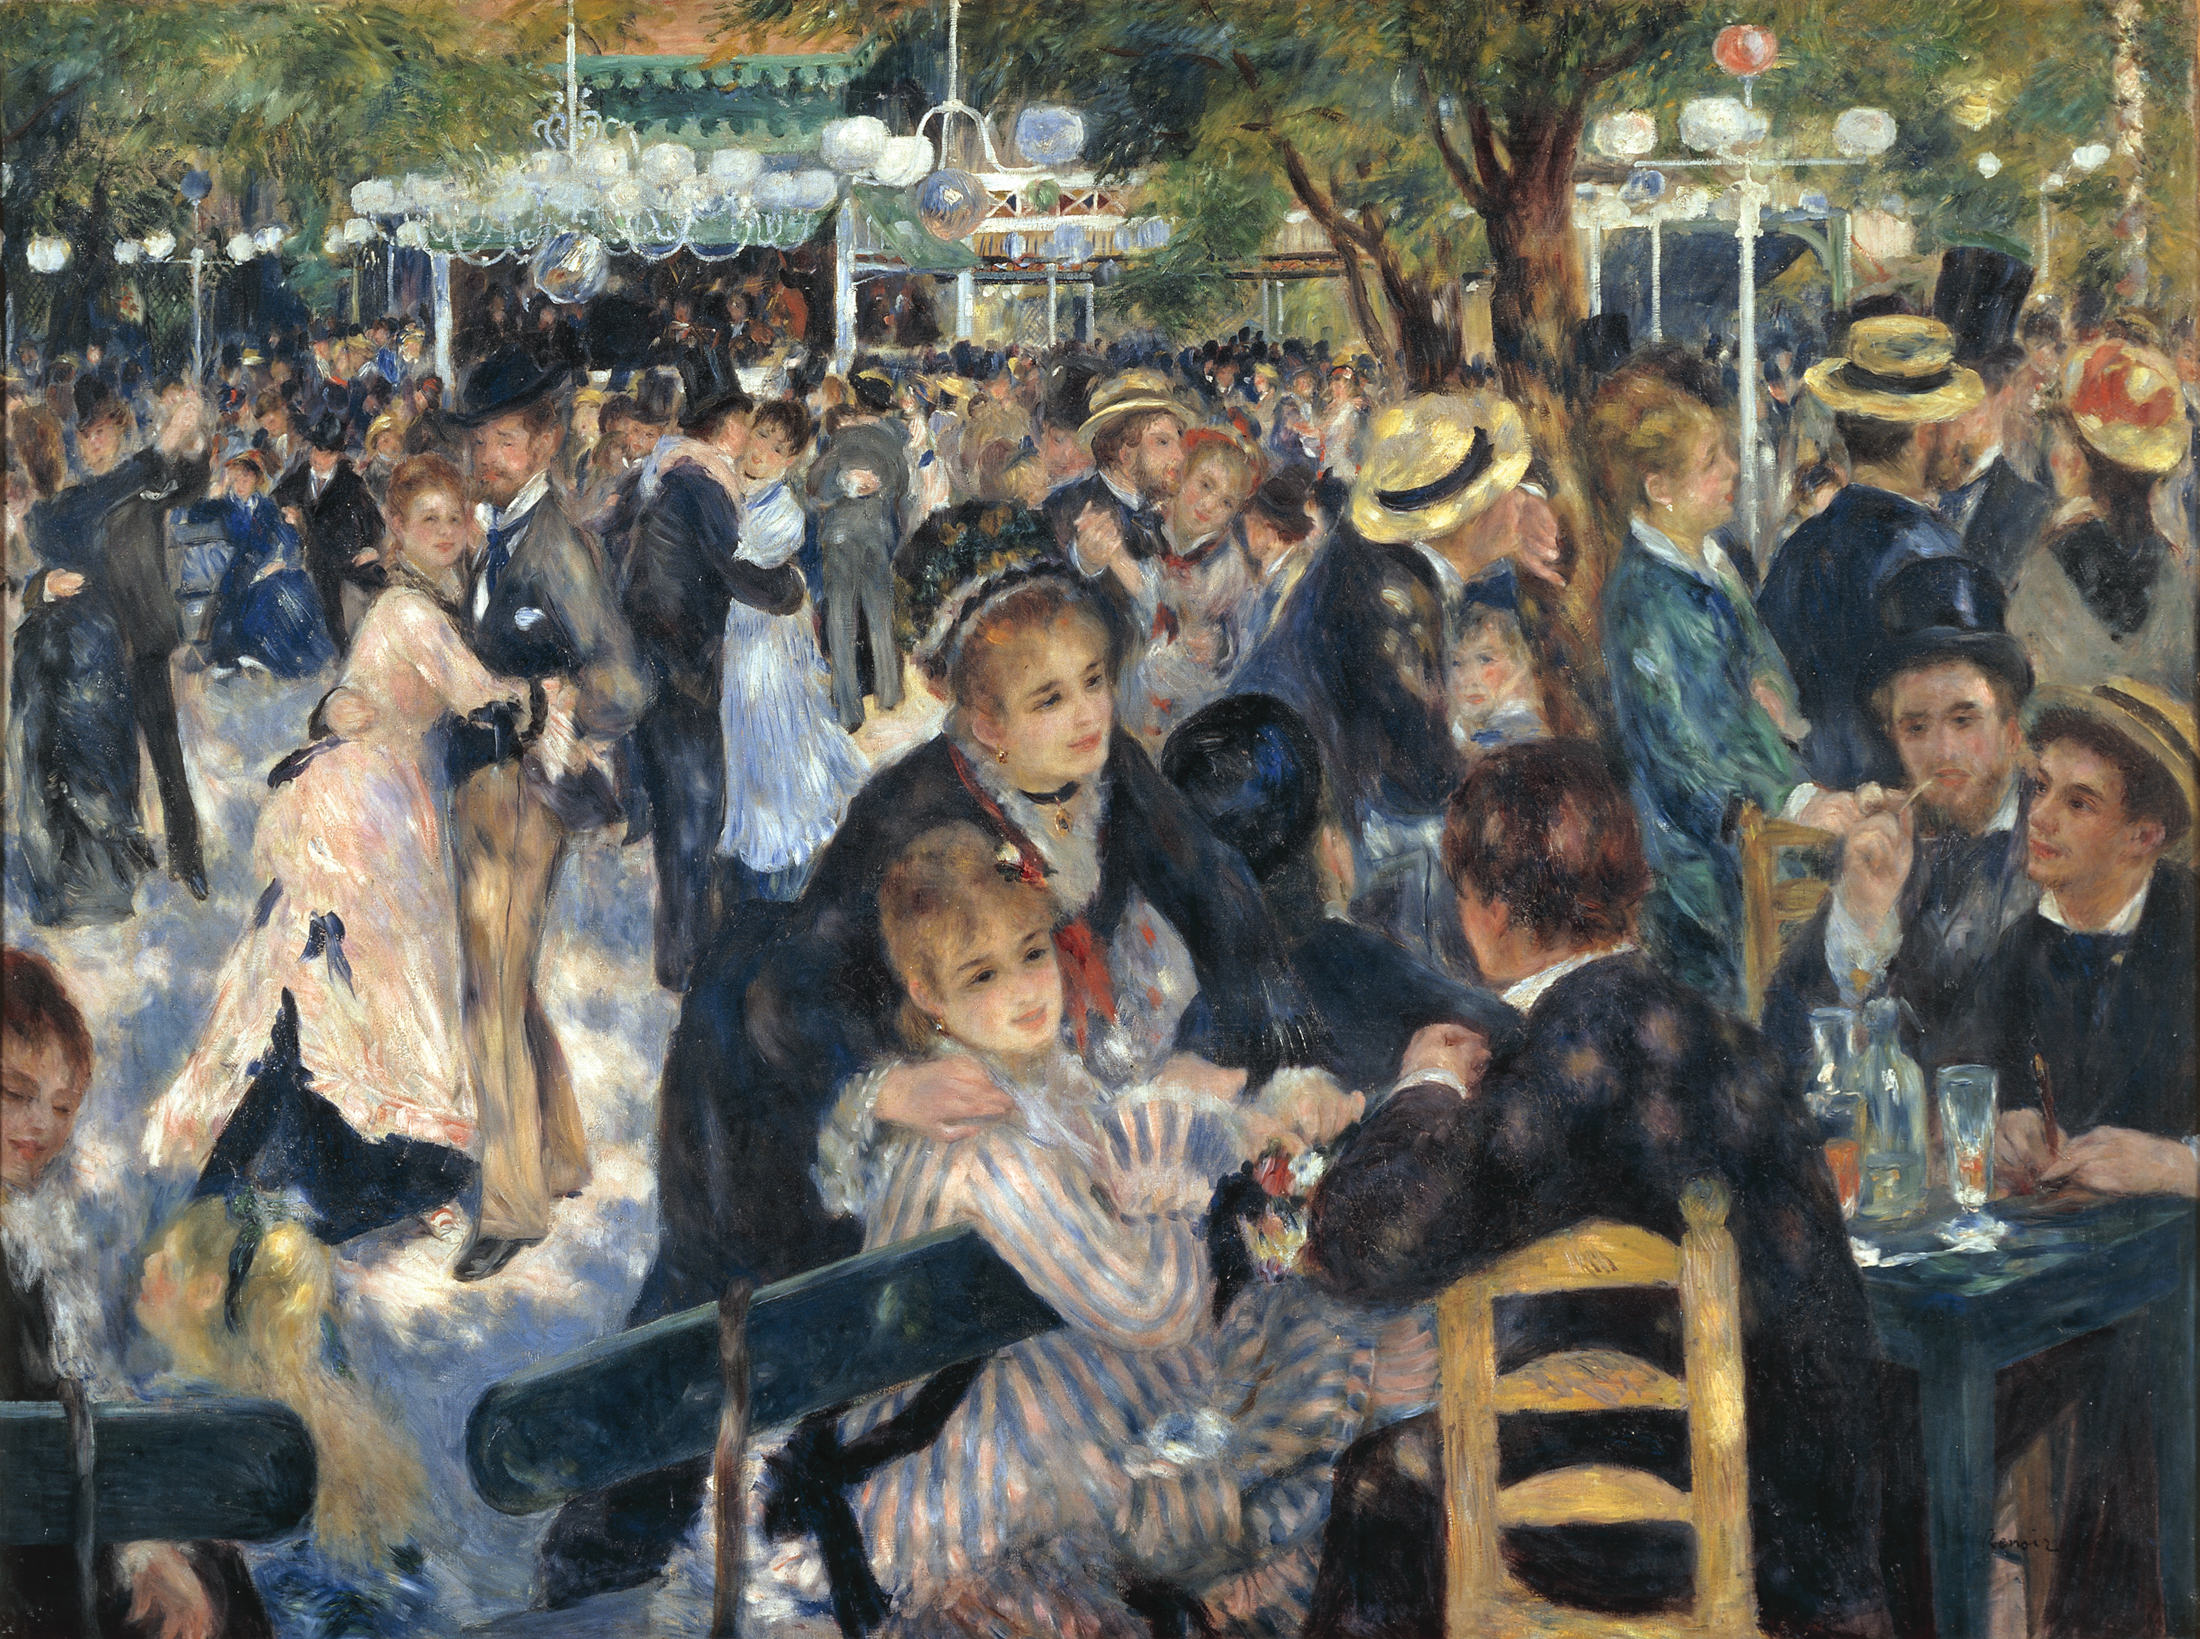 Dance at Moulin de la Galette - Pierre-Auguste Renoir painting on canvas